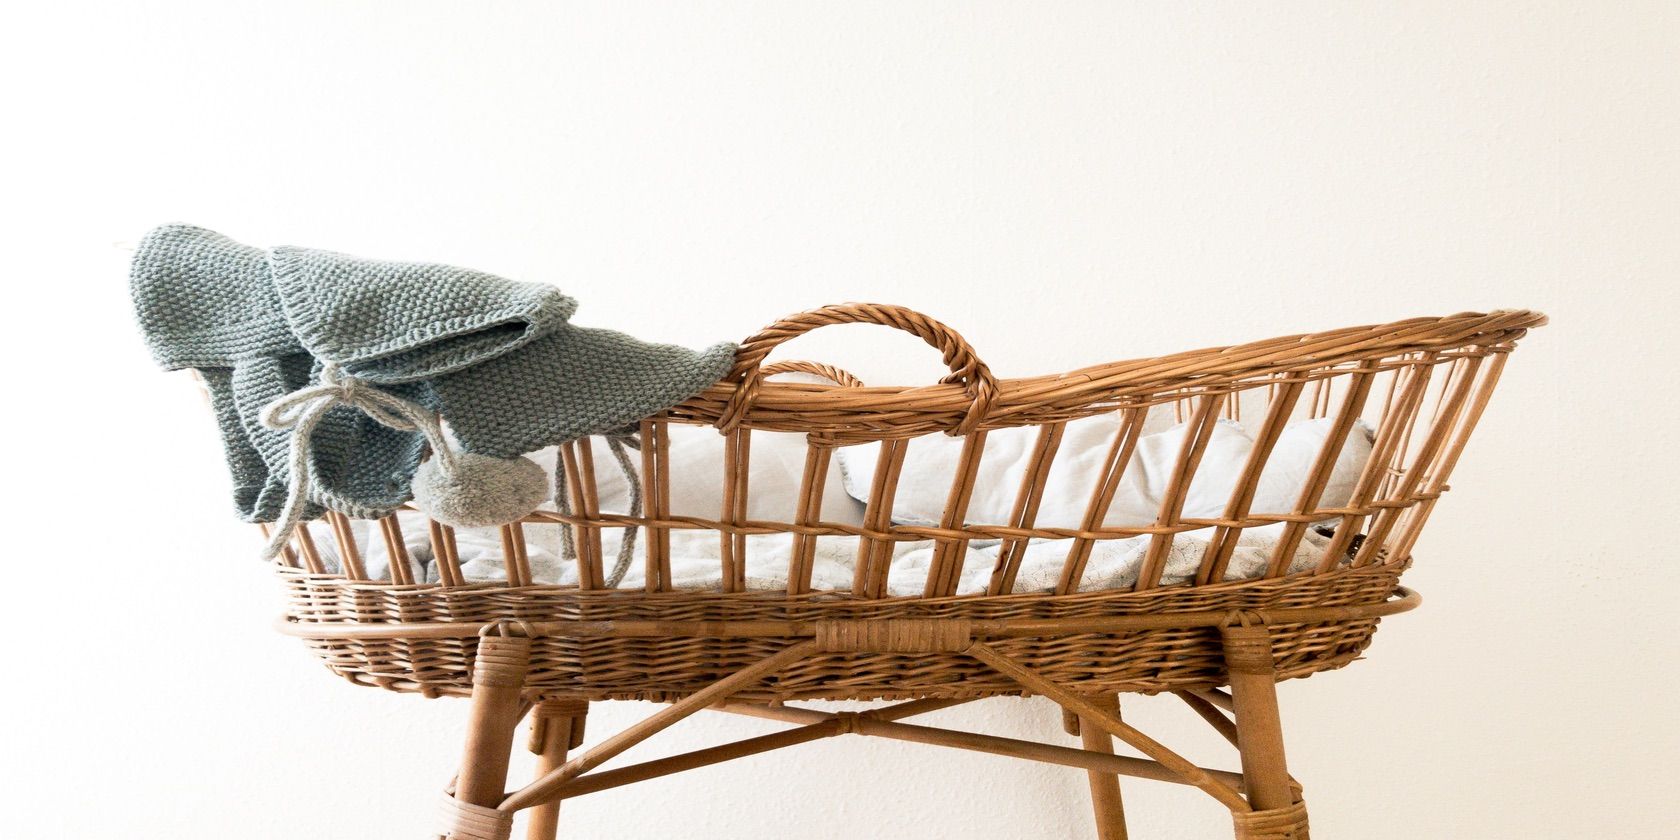 Empty Baby Cradle With Blanket - 8 storie positive sui social media che renderanno la tua giornata